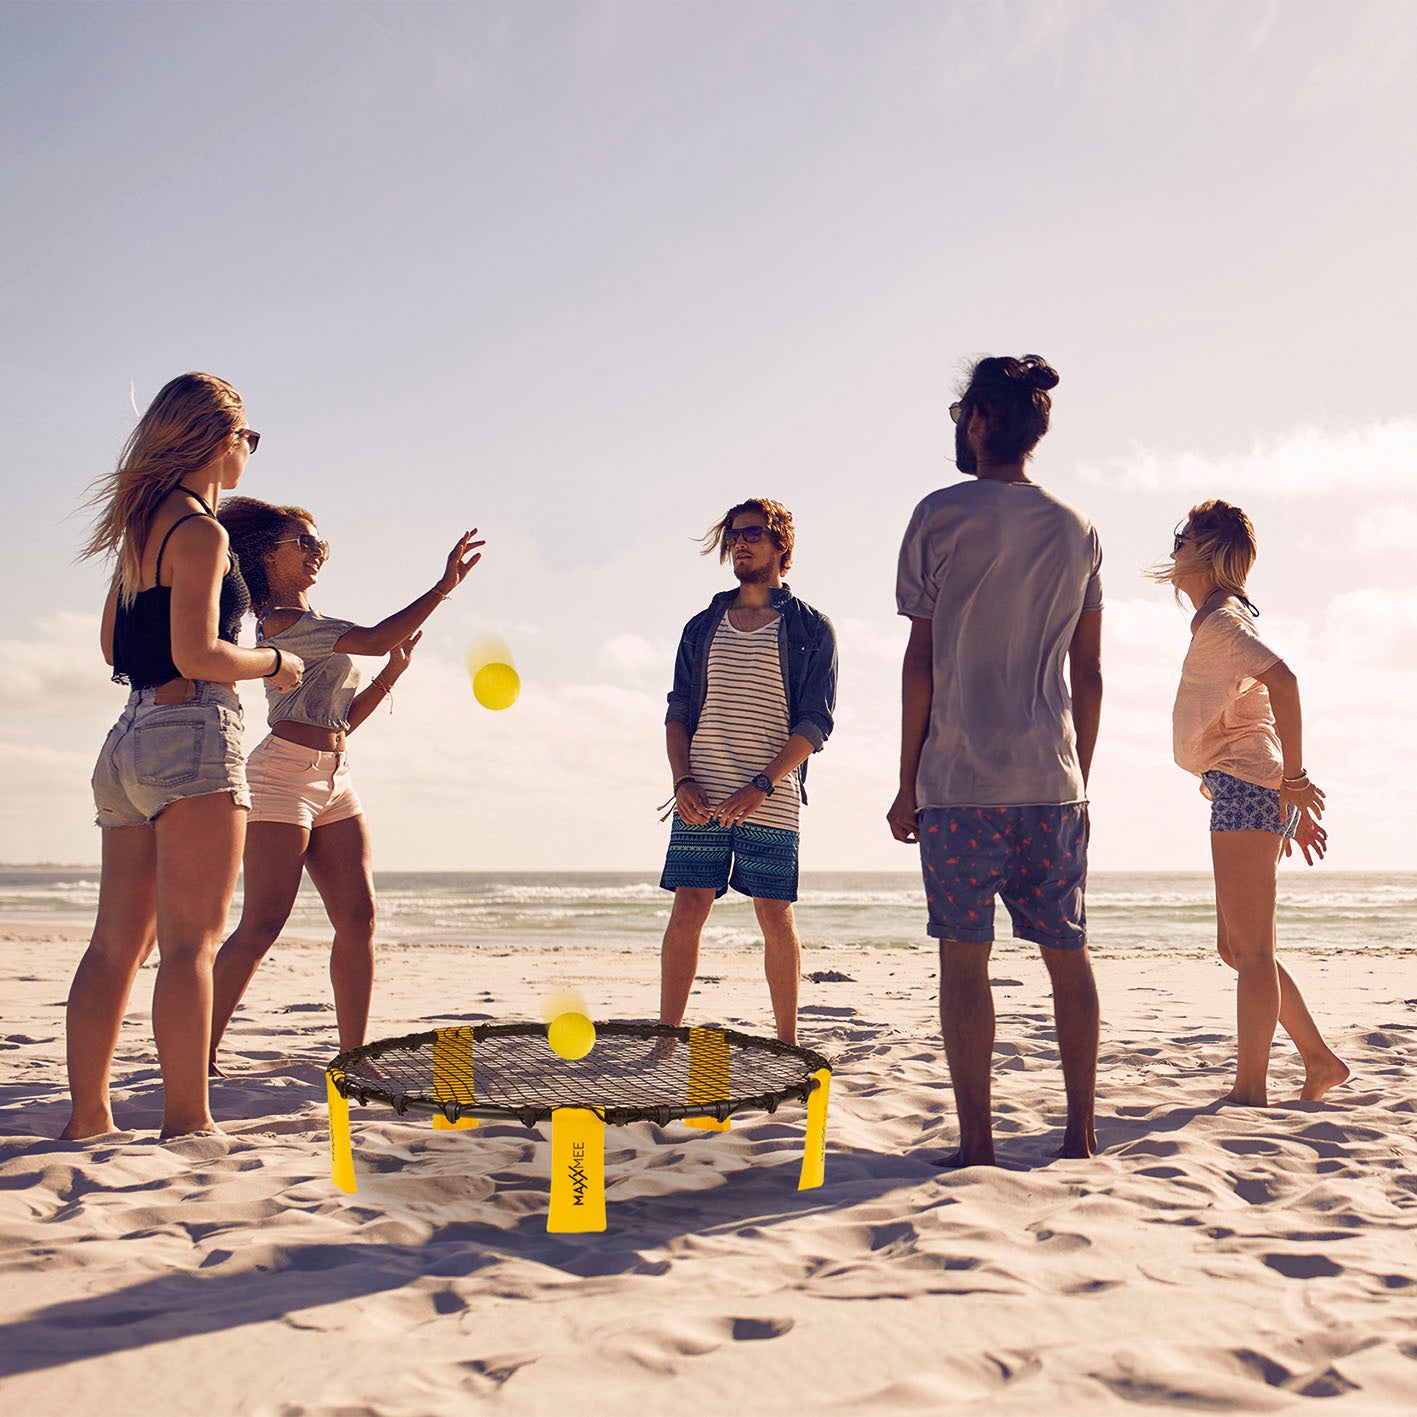 Mini-Volleyball-Spiel Spike Ball Set - 6-tlg. - gelb/schwarz